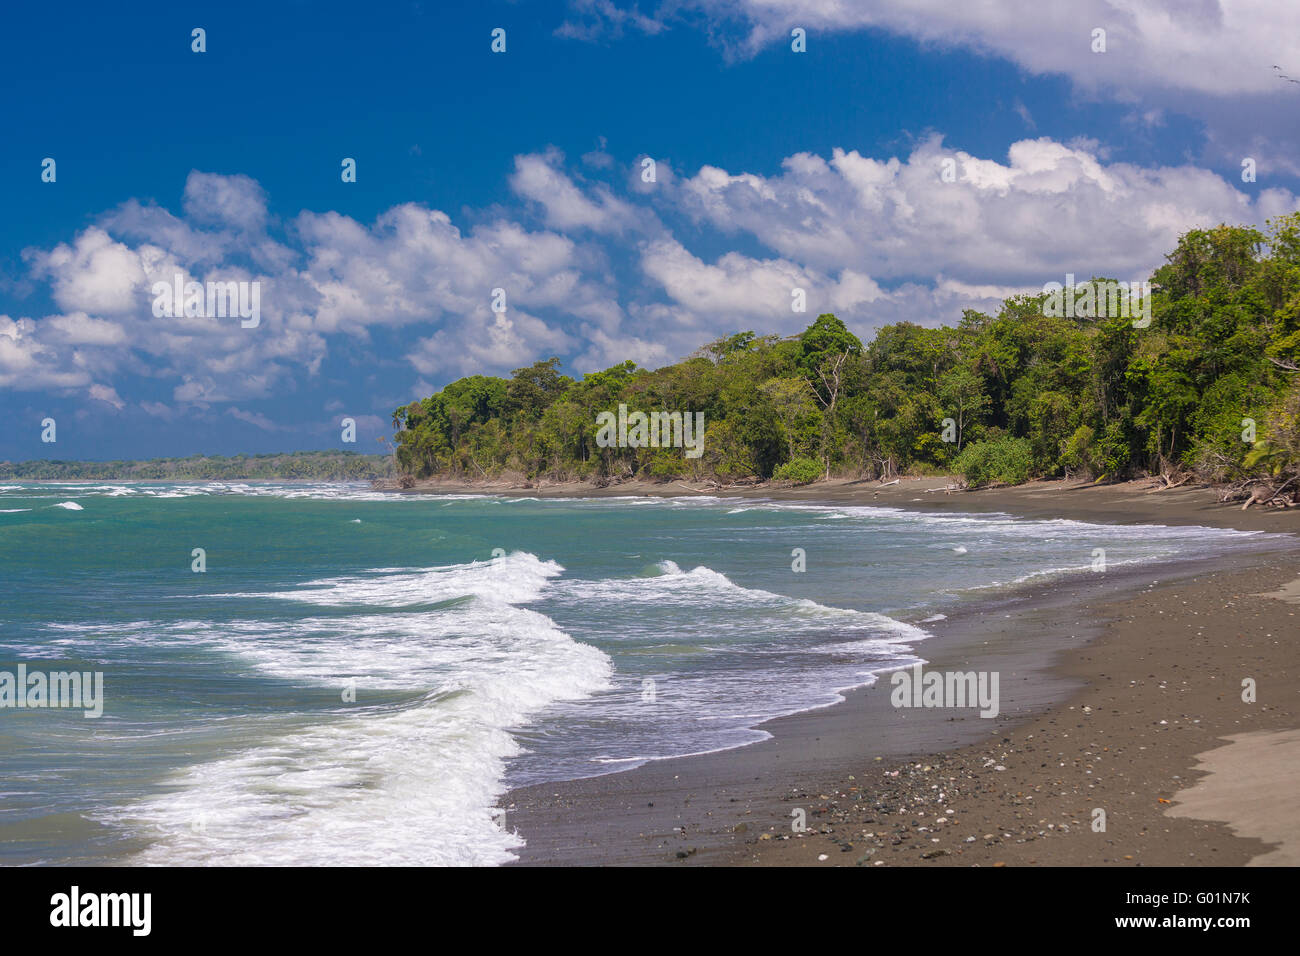 Parc national de Corcovado, COSTA RICA - plage sur l'océan Pacifique, la péninsule de Osa. Banque D'Images